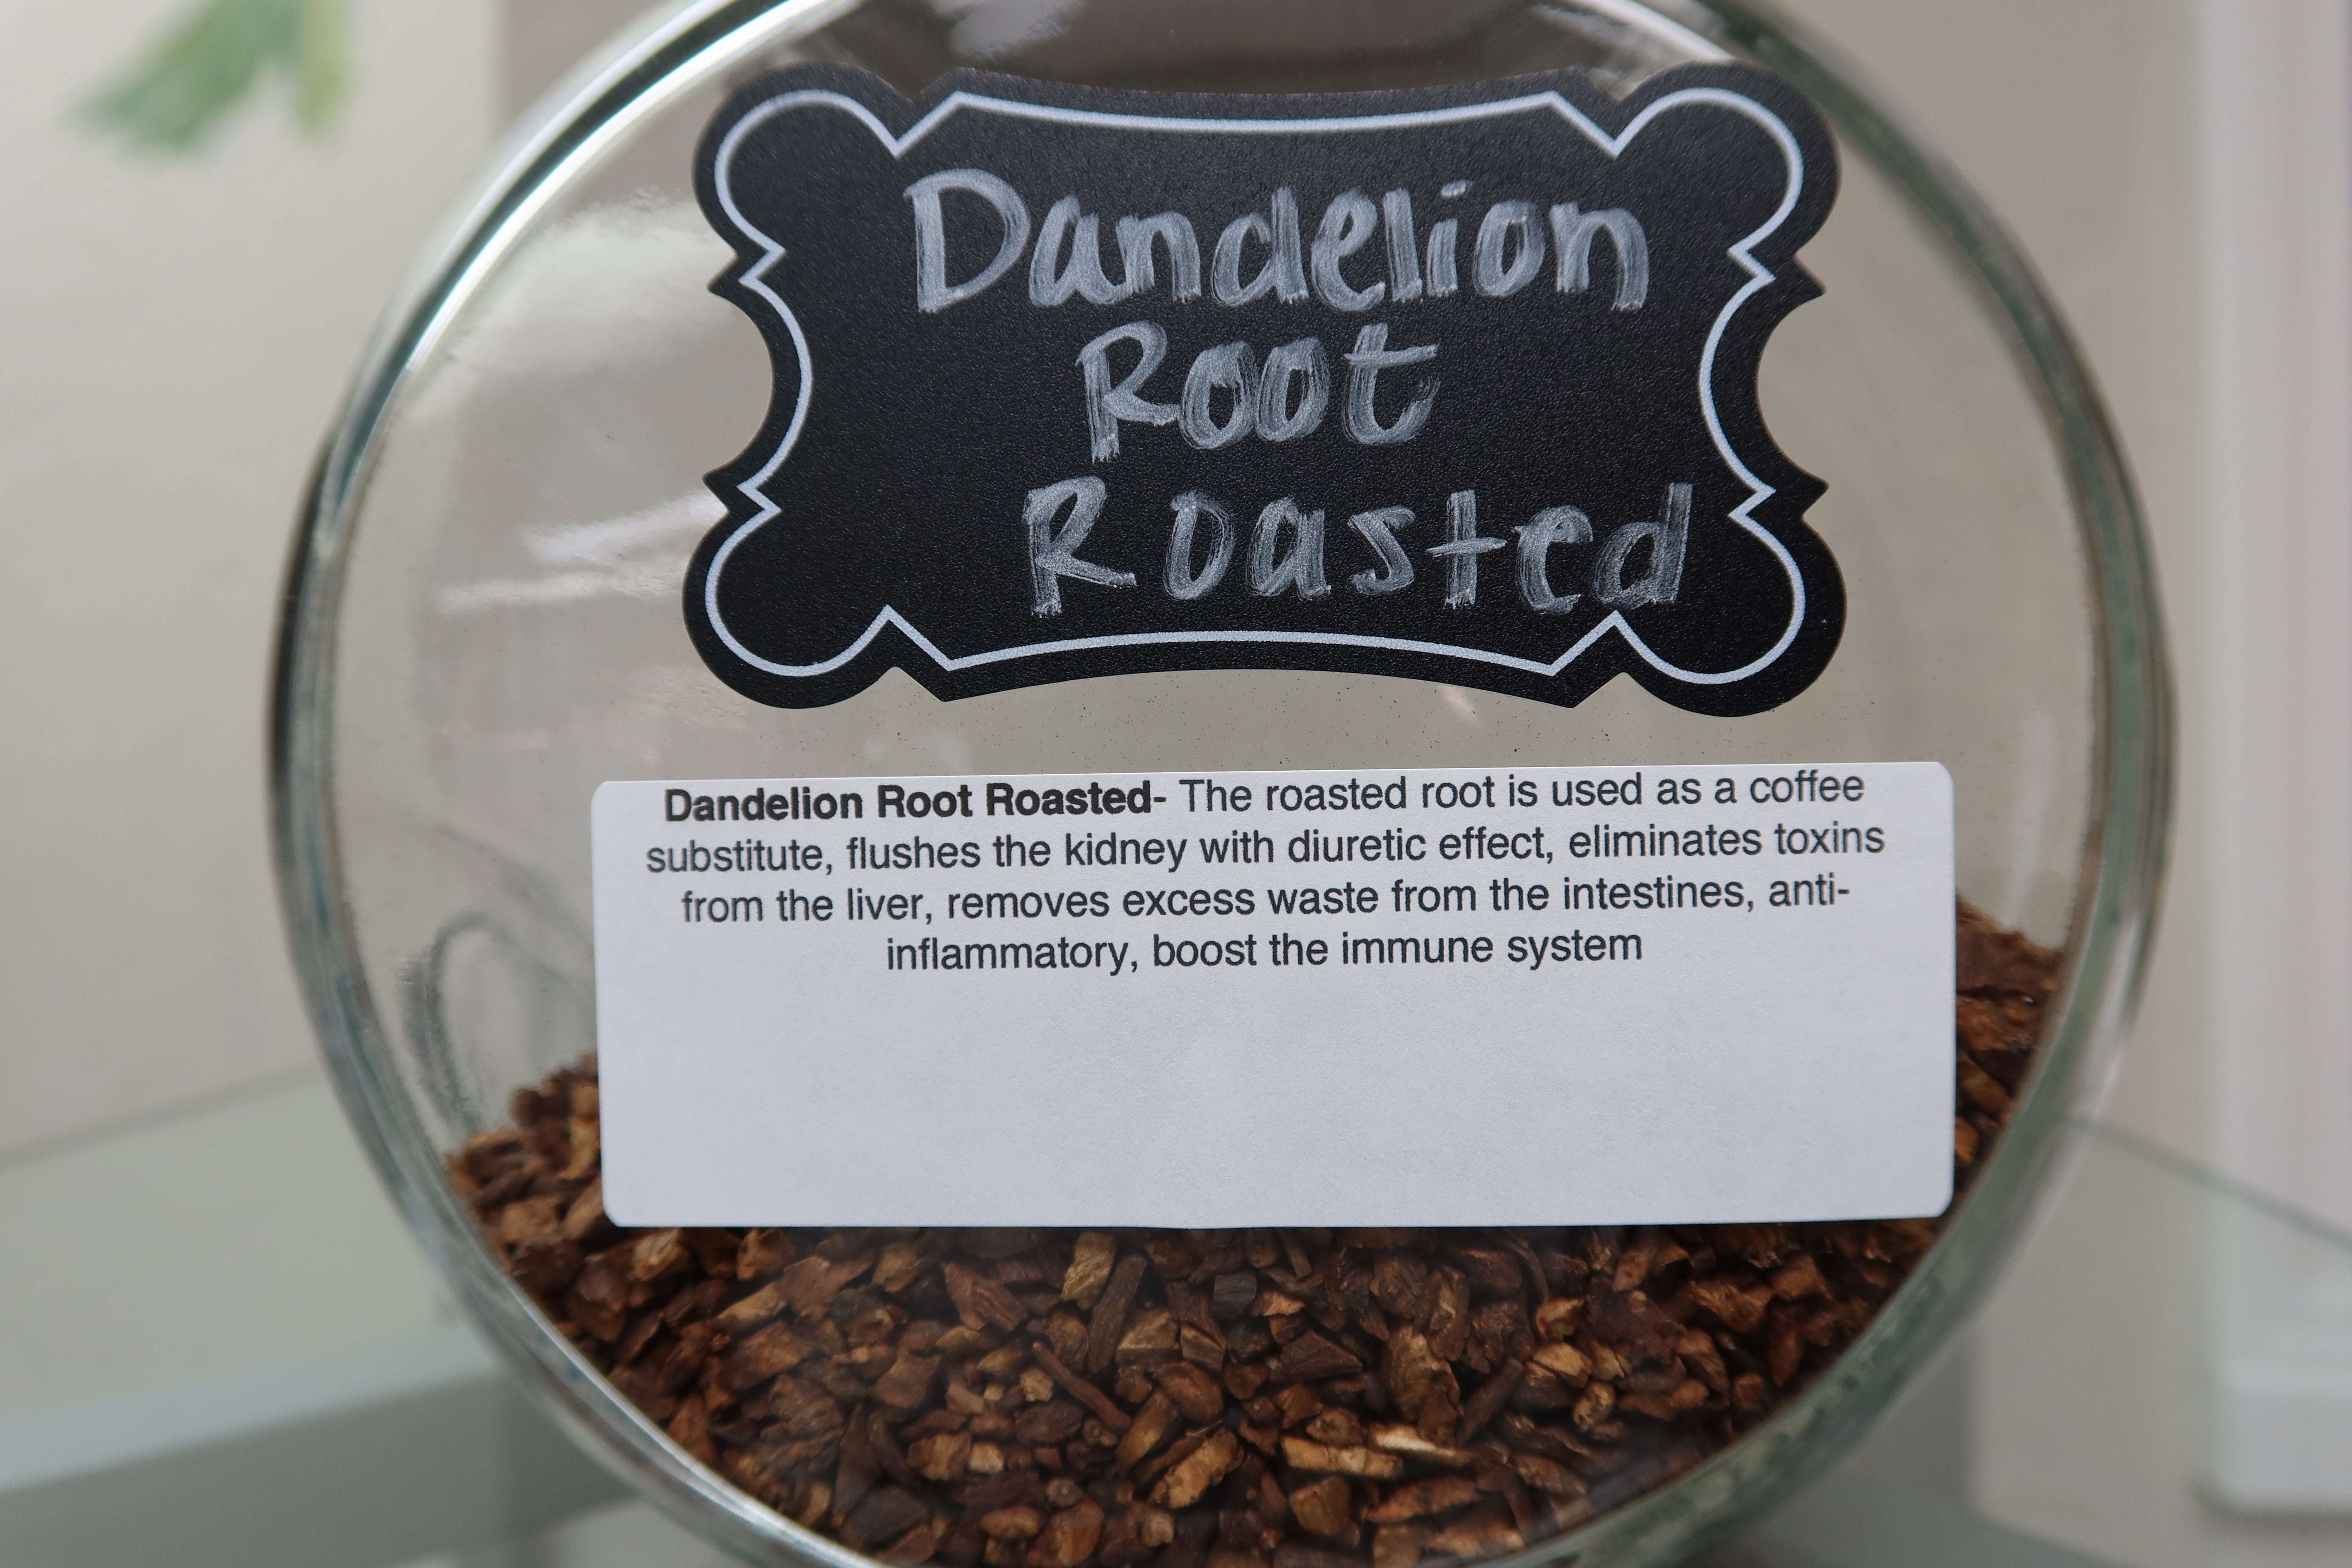 Dandelion Root Roasted